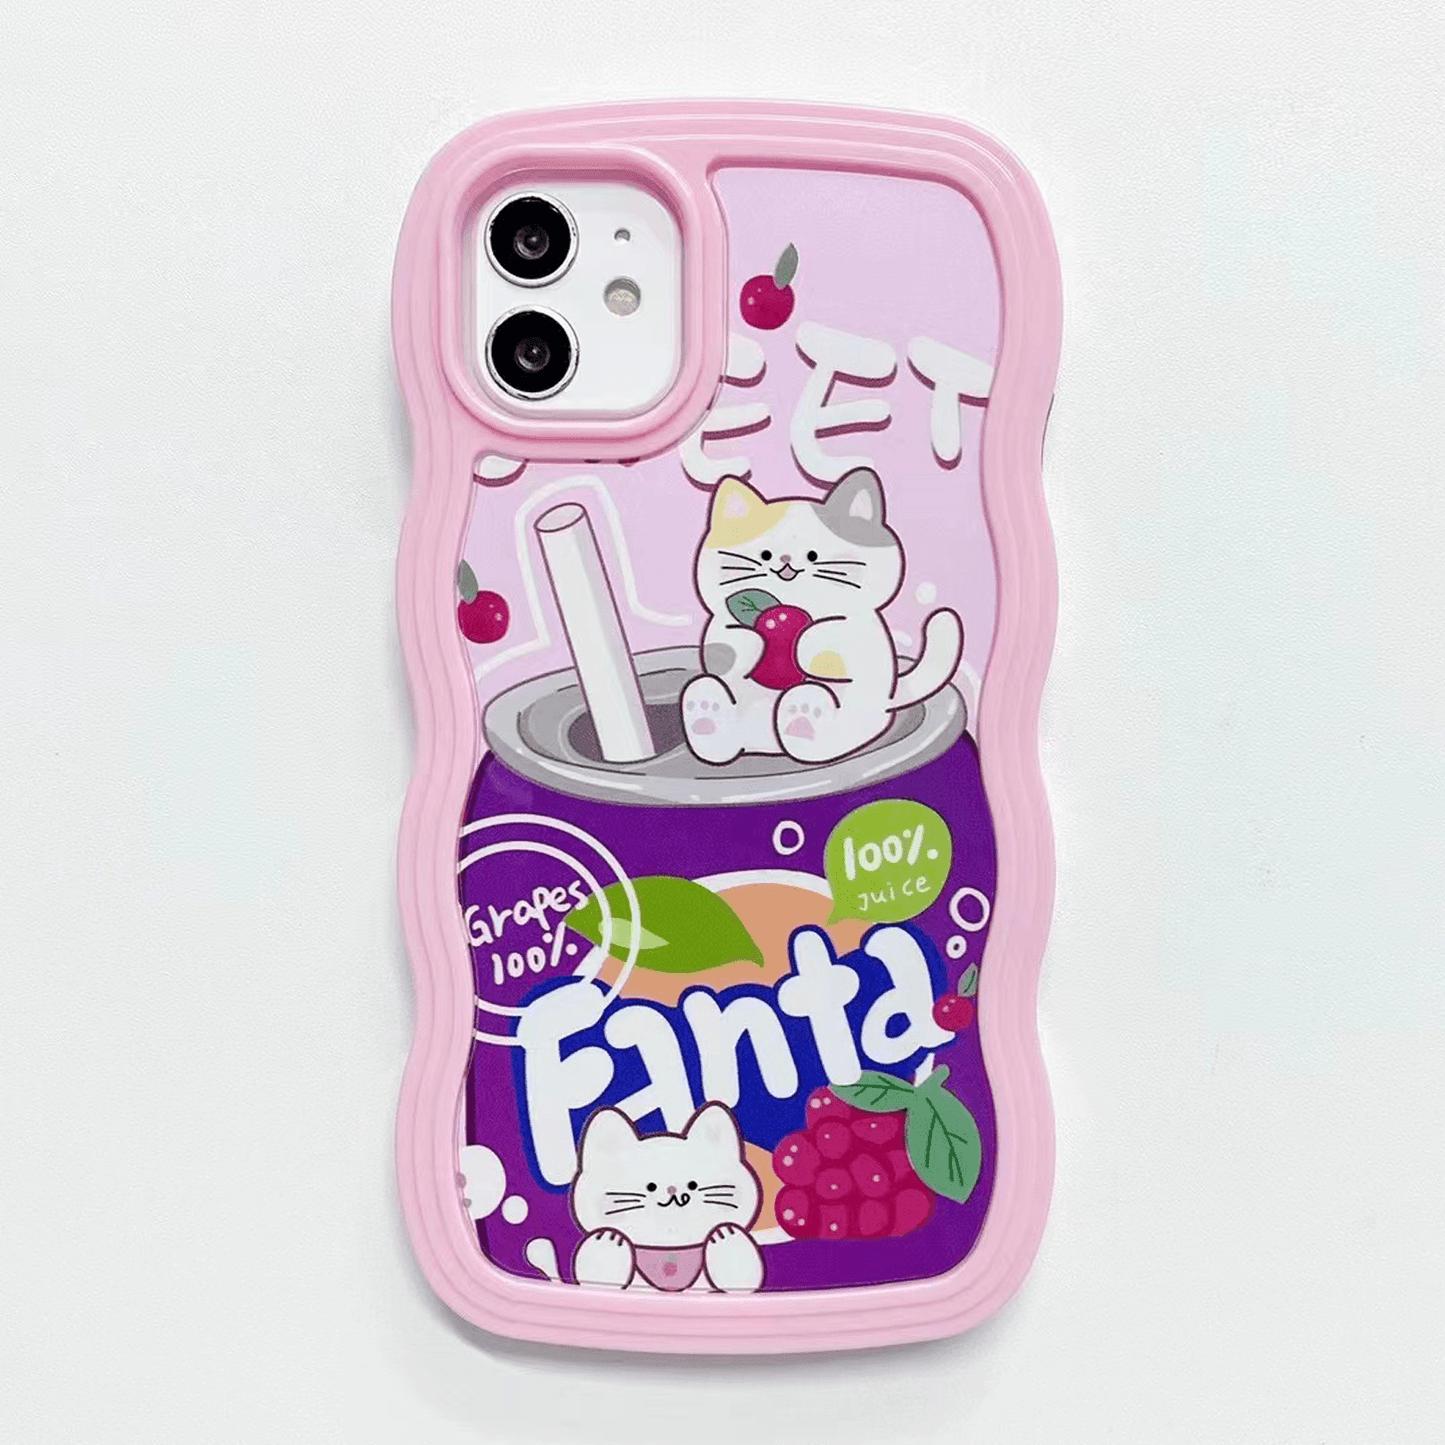 Cute Sprite Printed Phone Case